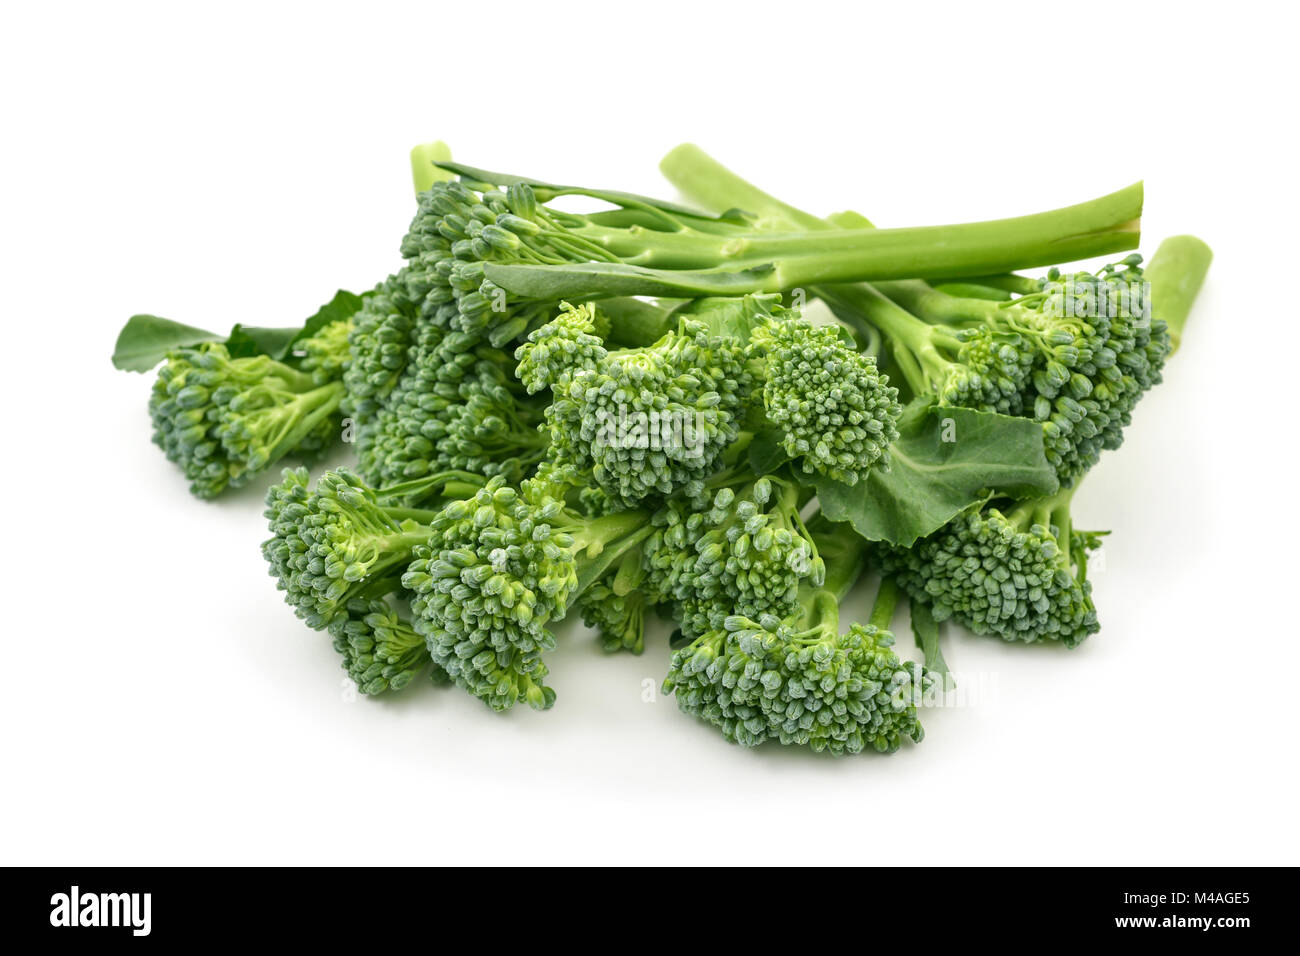 Acercamiento de algunos tallos de broccolini sobre un fondo blanco. Foto de stock